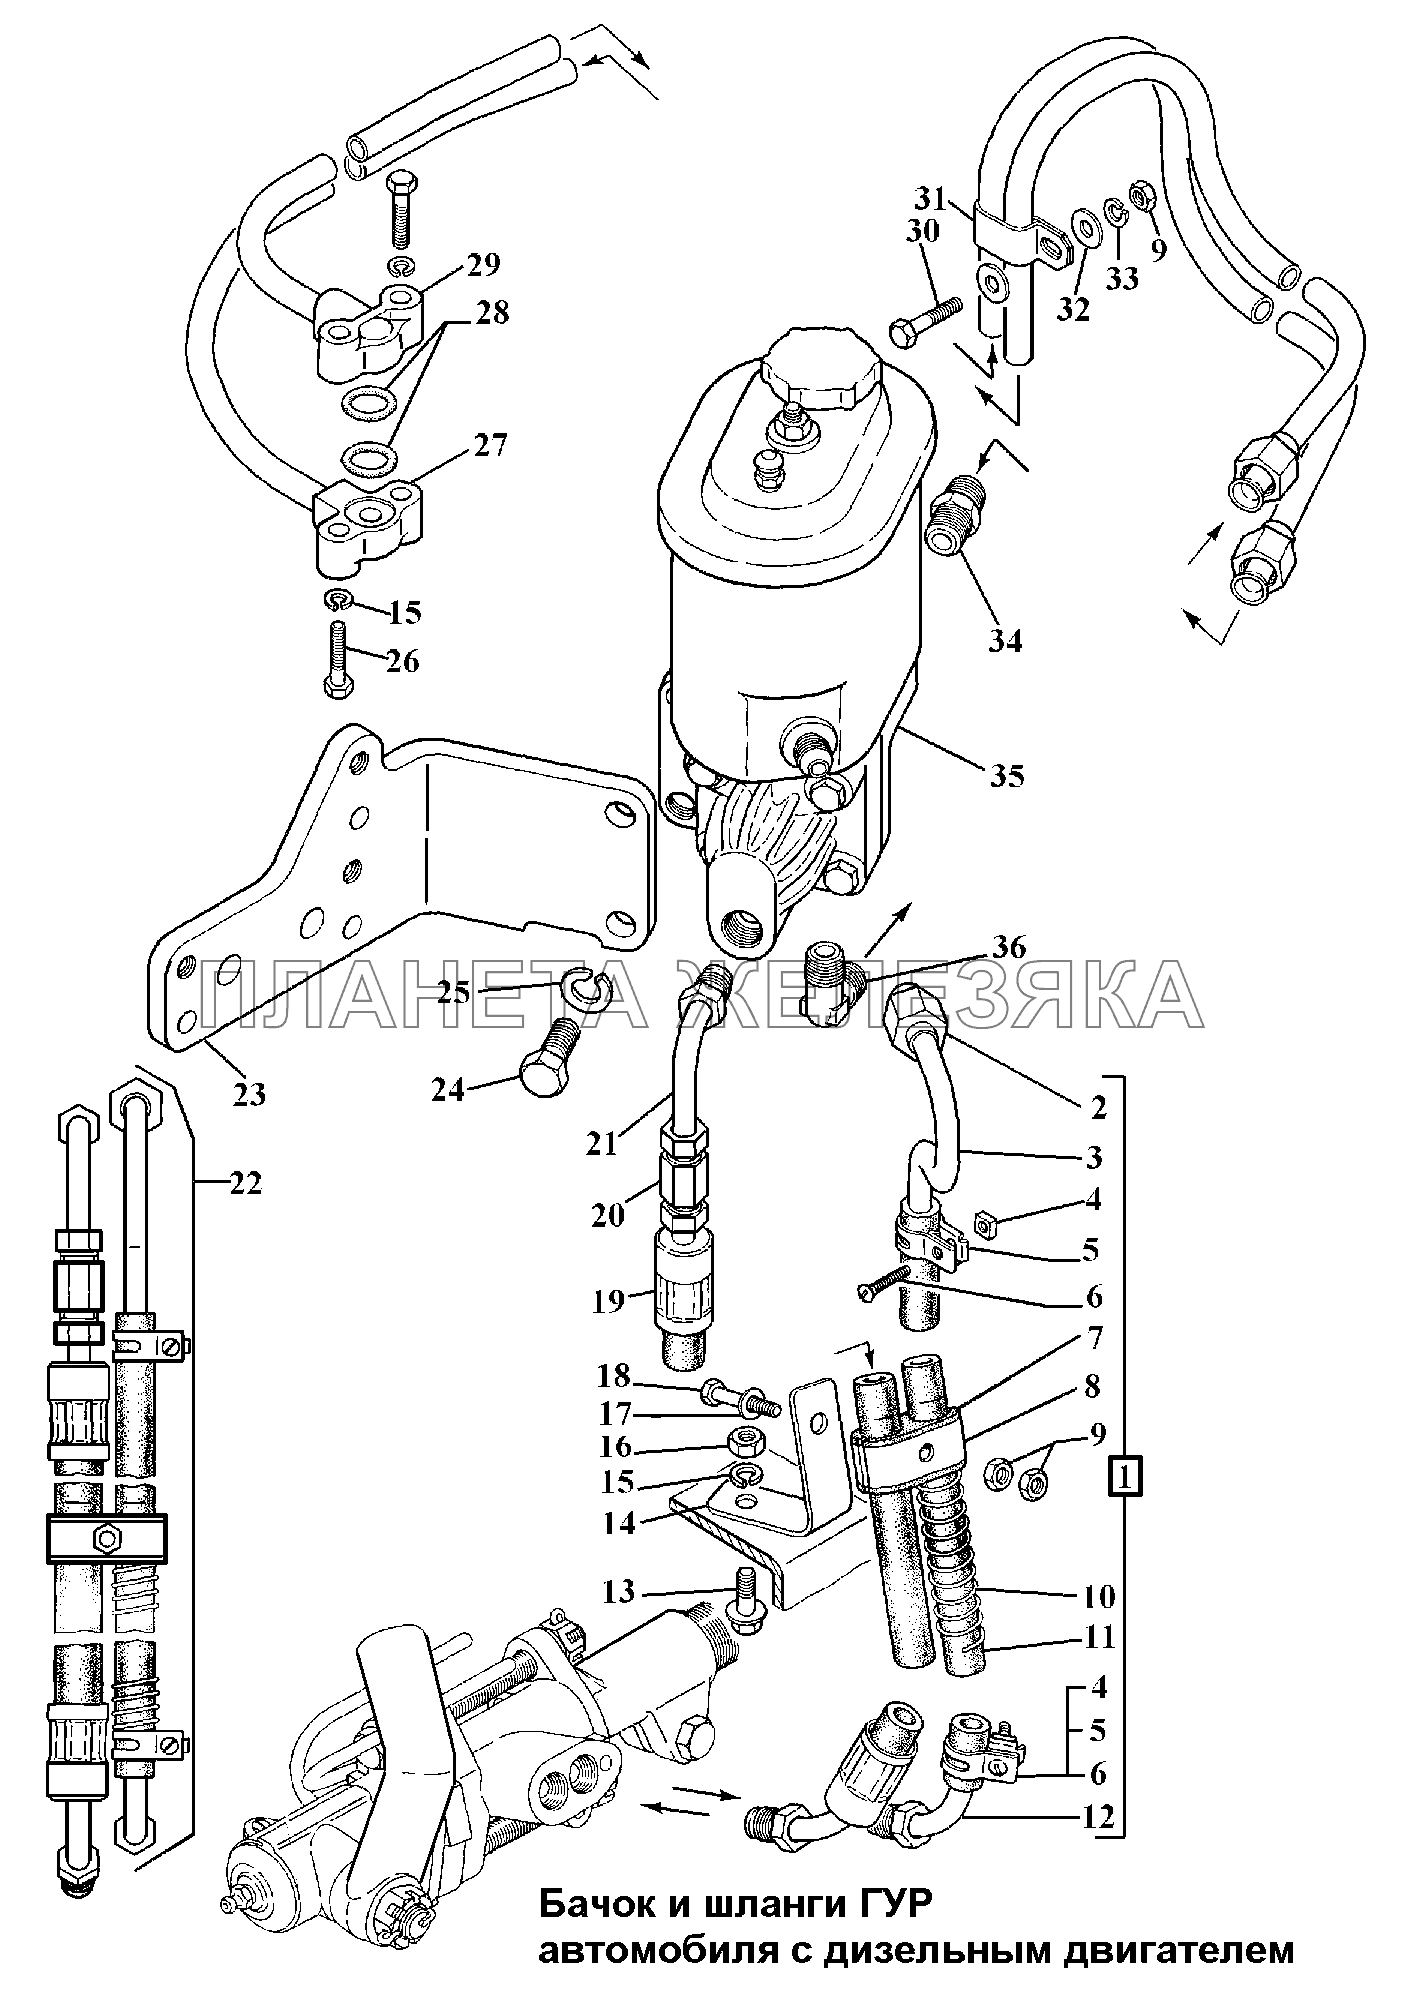 Бачок и шланги ГУР автомобиля с дизельным двигателем ГАЗ-3308